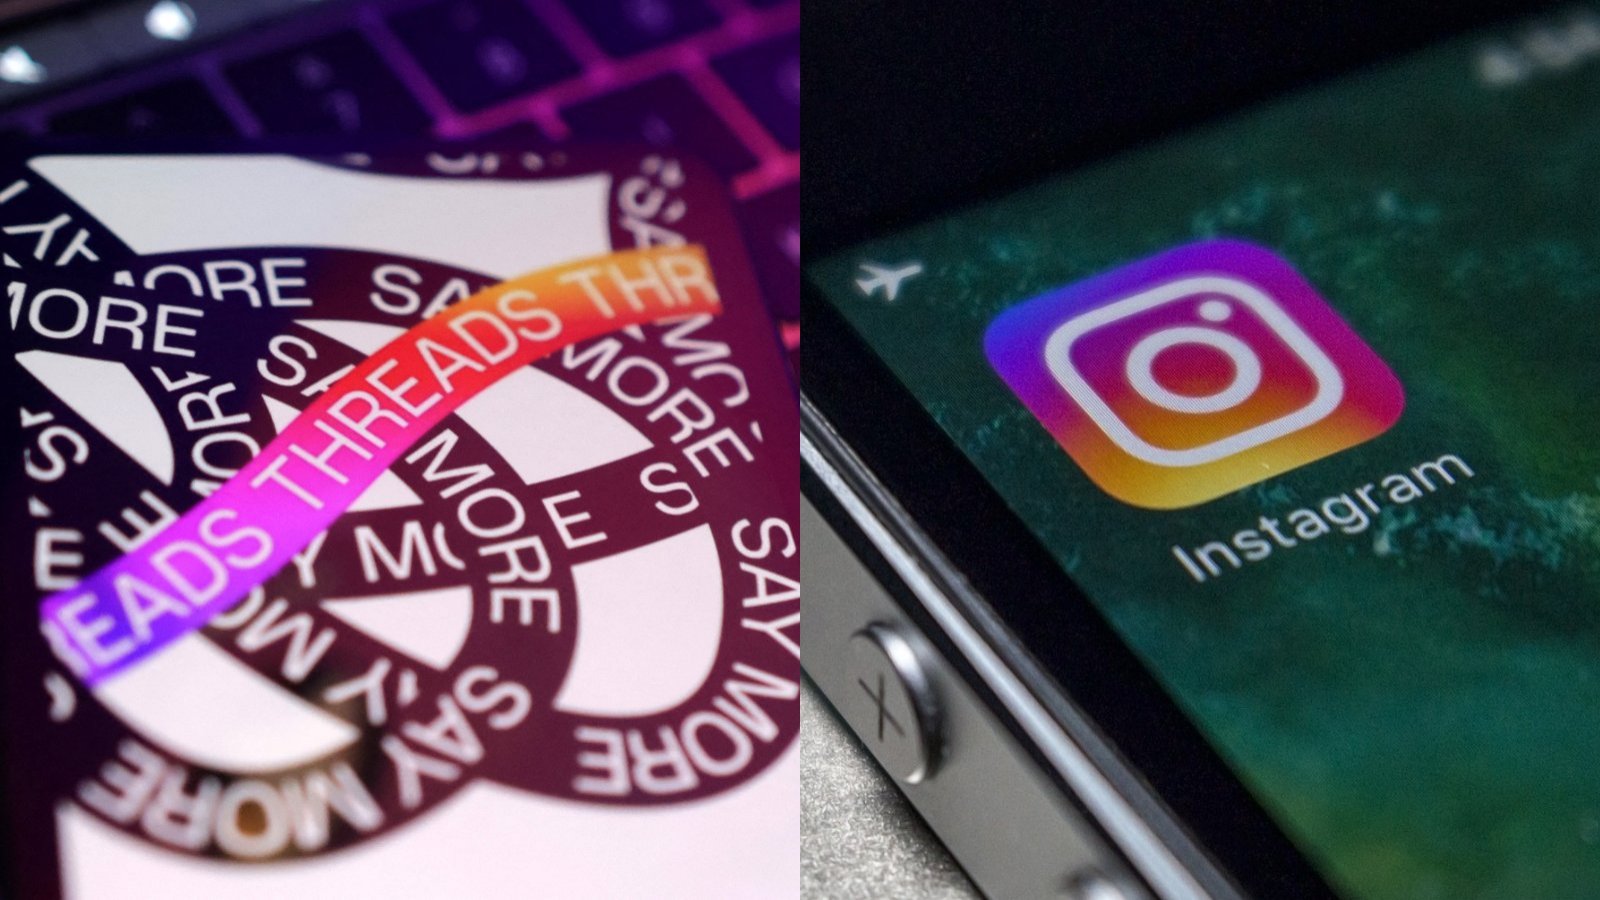 A la izquierda una imagen de Threads y a la derecha una imagen de Instagram.